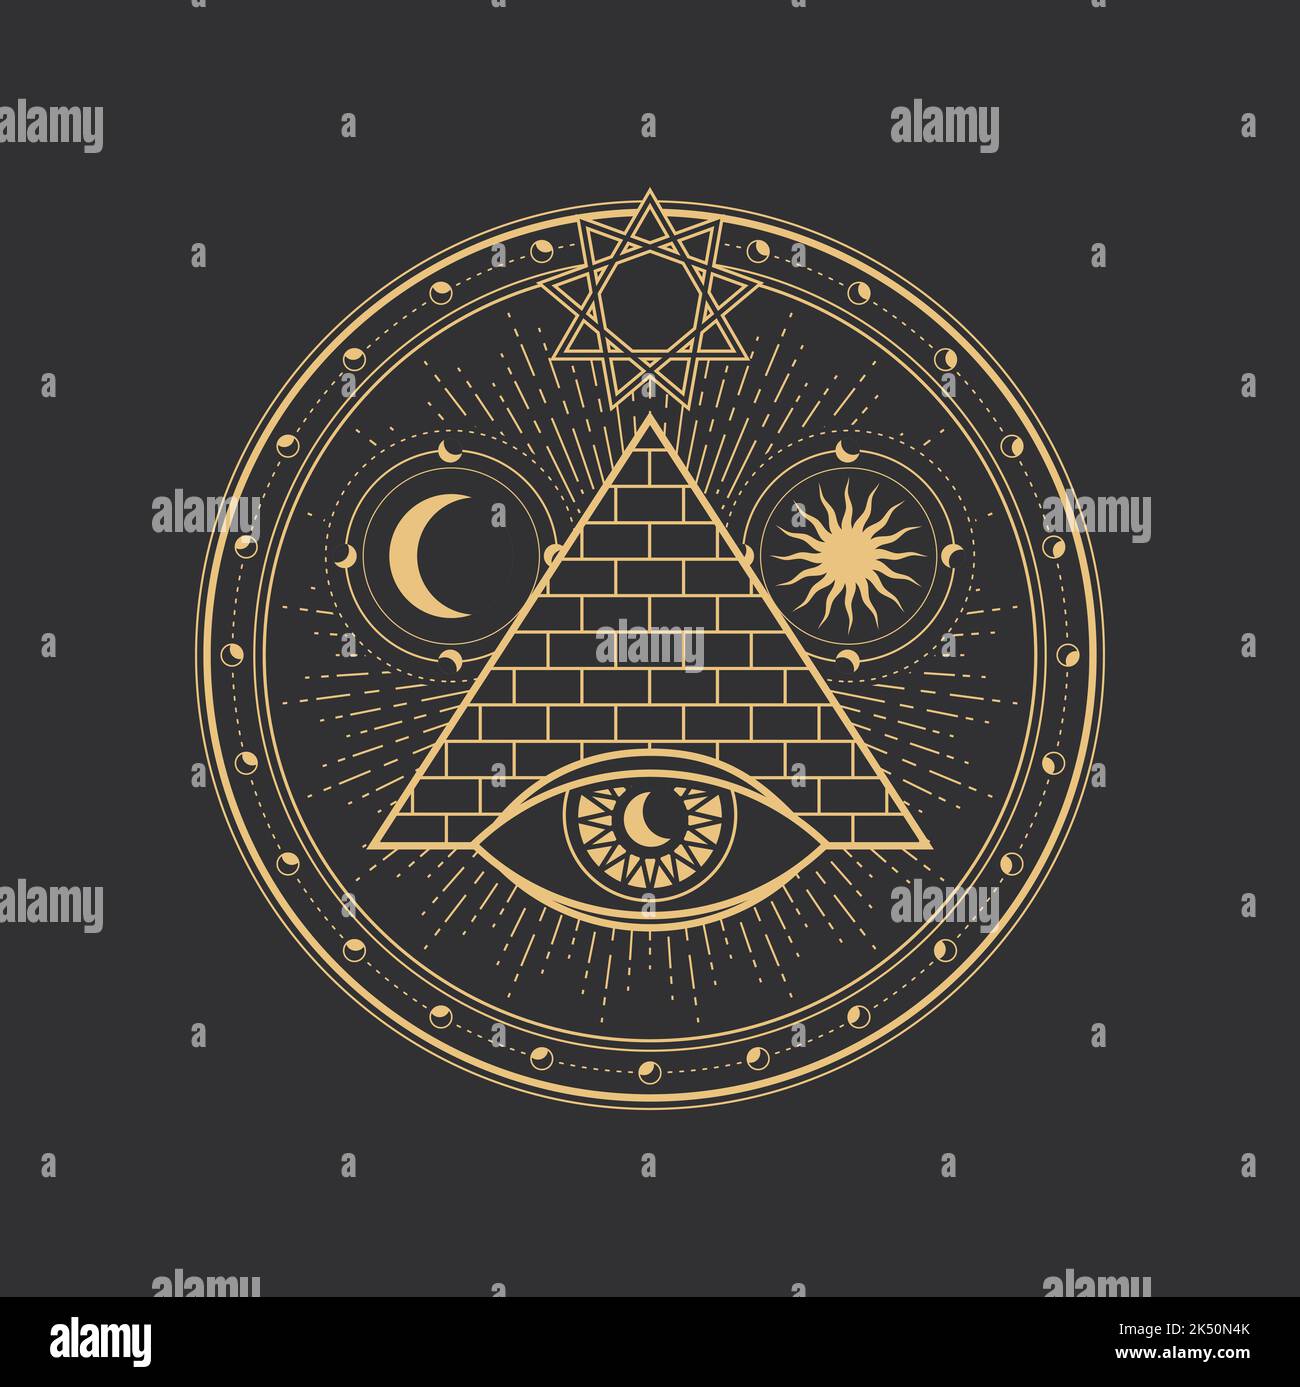 Pentagramm Symbol, Kreis und Magie Ägypten Pyramide Dreieck mit Auge, Vektor esoterischen okkulten Tarot Zeichen. Pentagramm Symbol der Alchemie, Illuminati-Stern und Freimaurer heilige Pyramide mit Mond, Sonne und Auge Stock Vektor